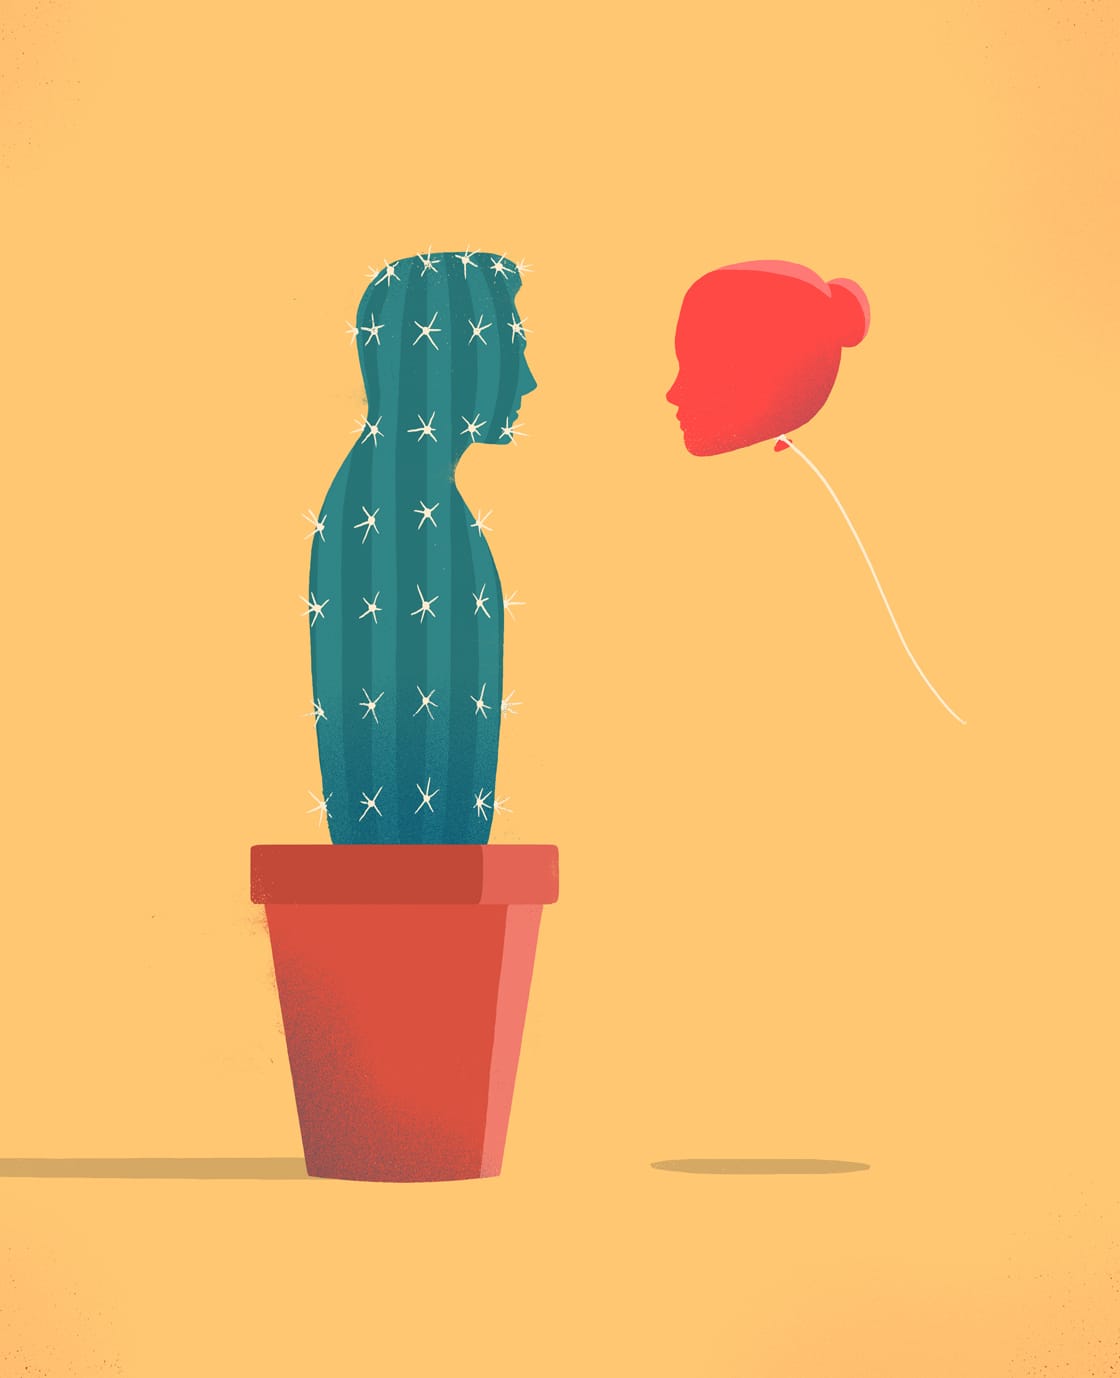 Sur fond orange un cactus en forme d'homme fait face à un ballon de baudruche rouge qui représente un visage de femme